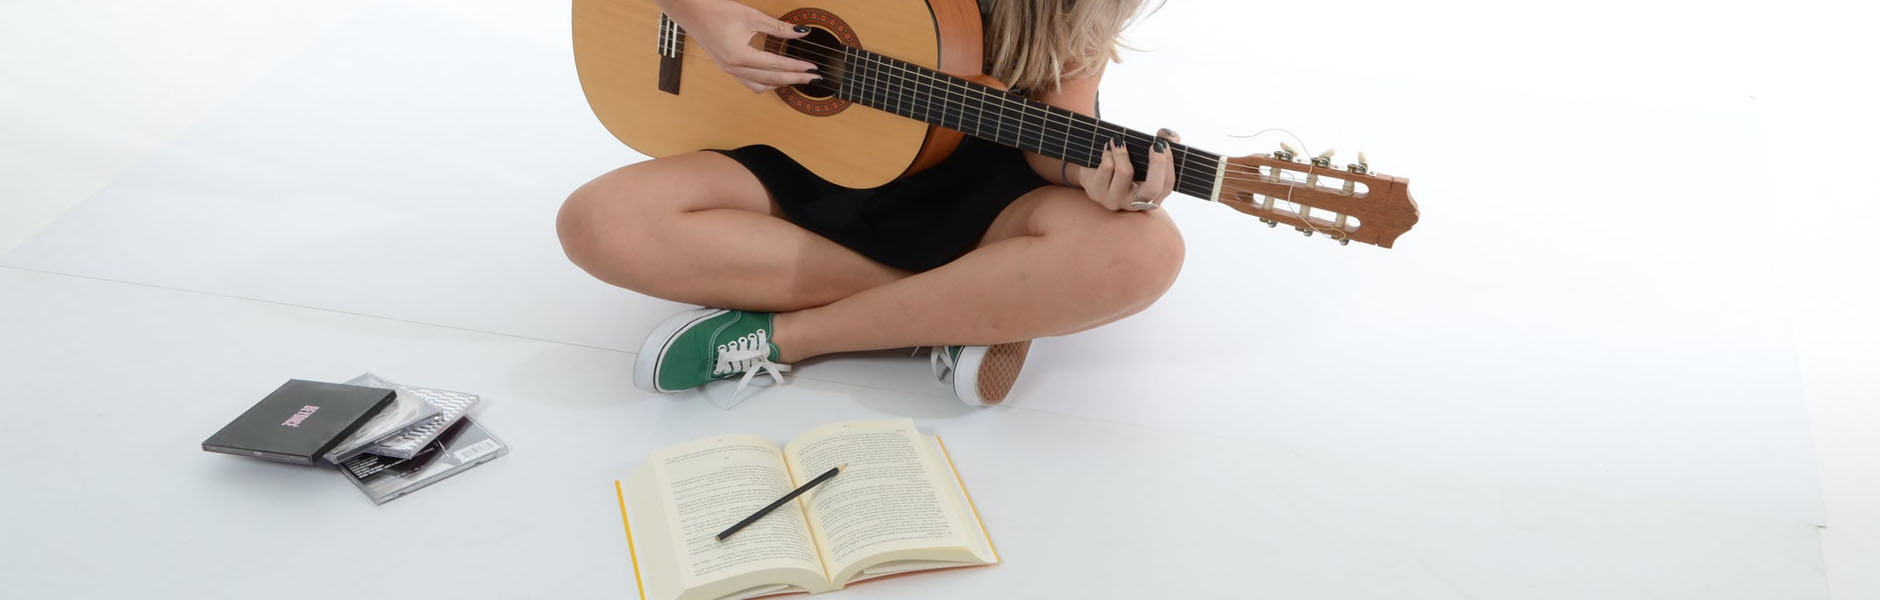 girl playing guitar 